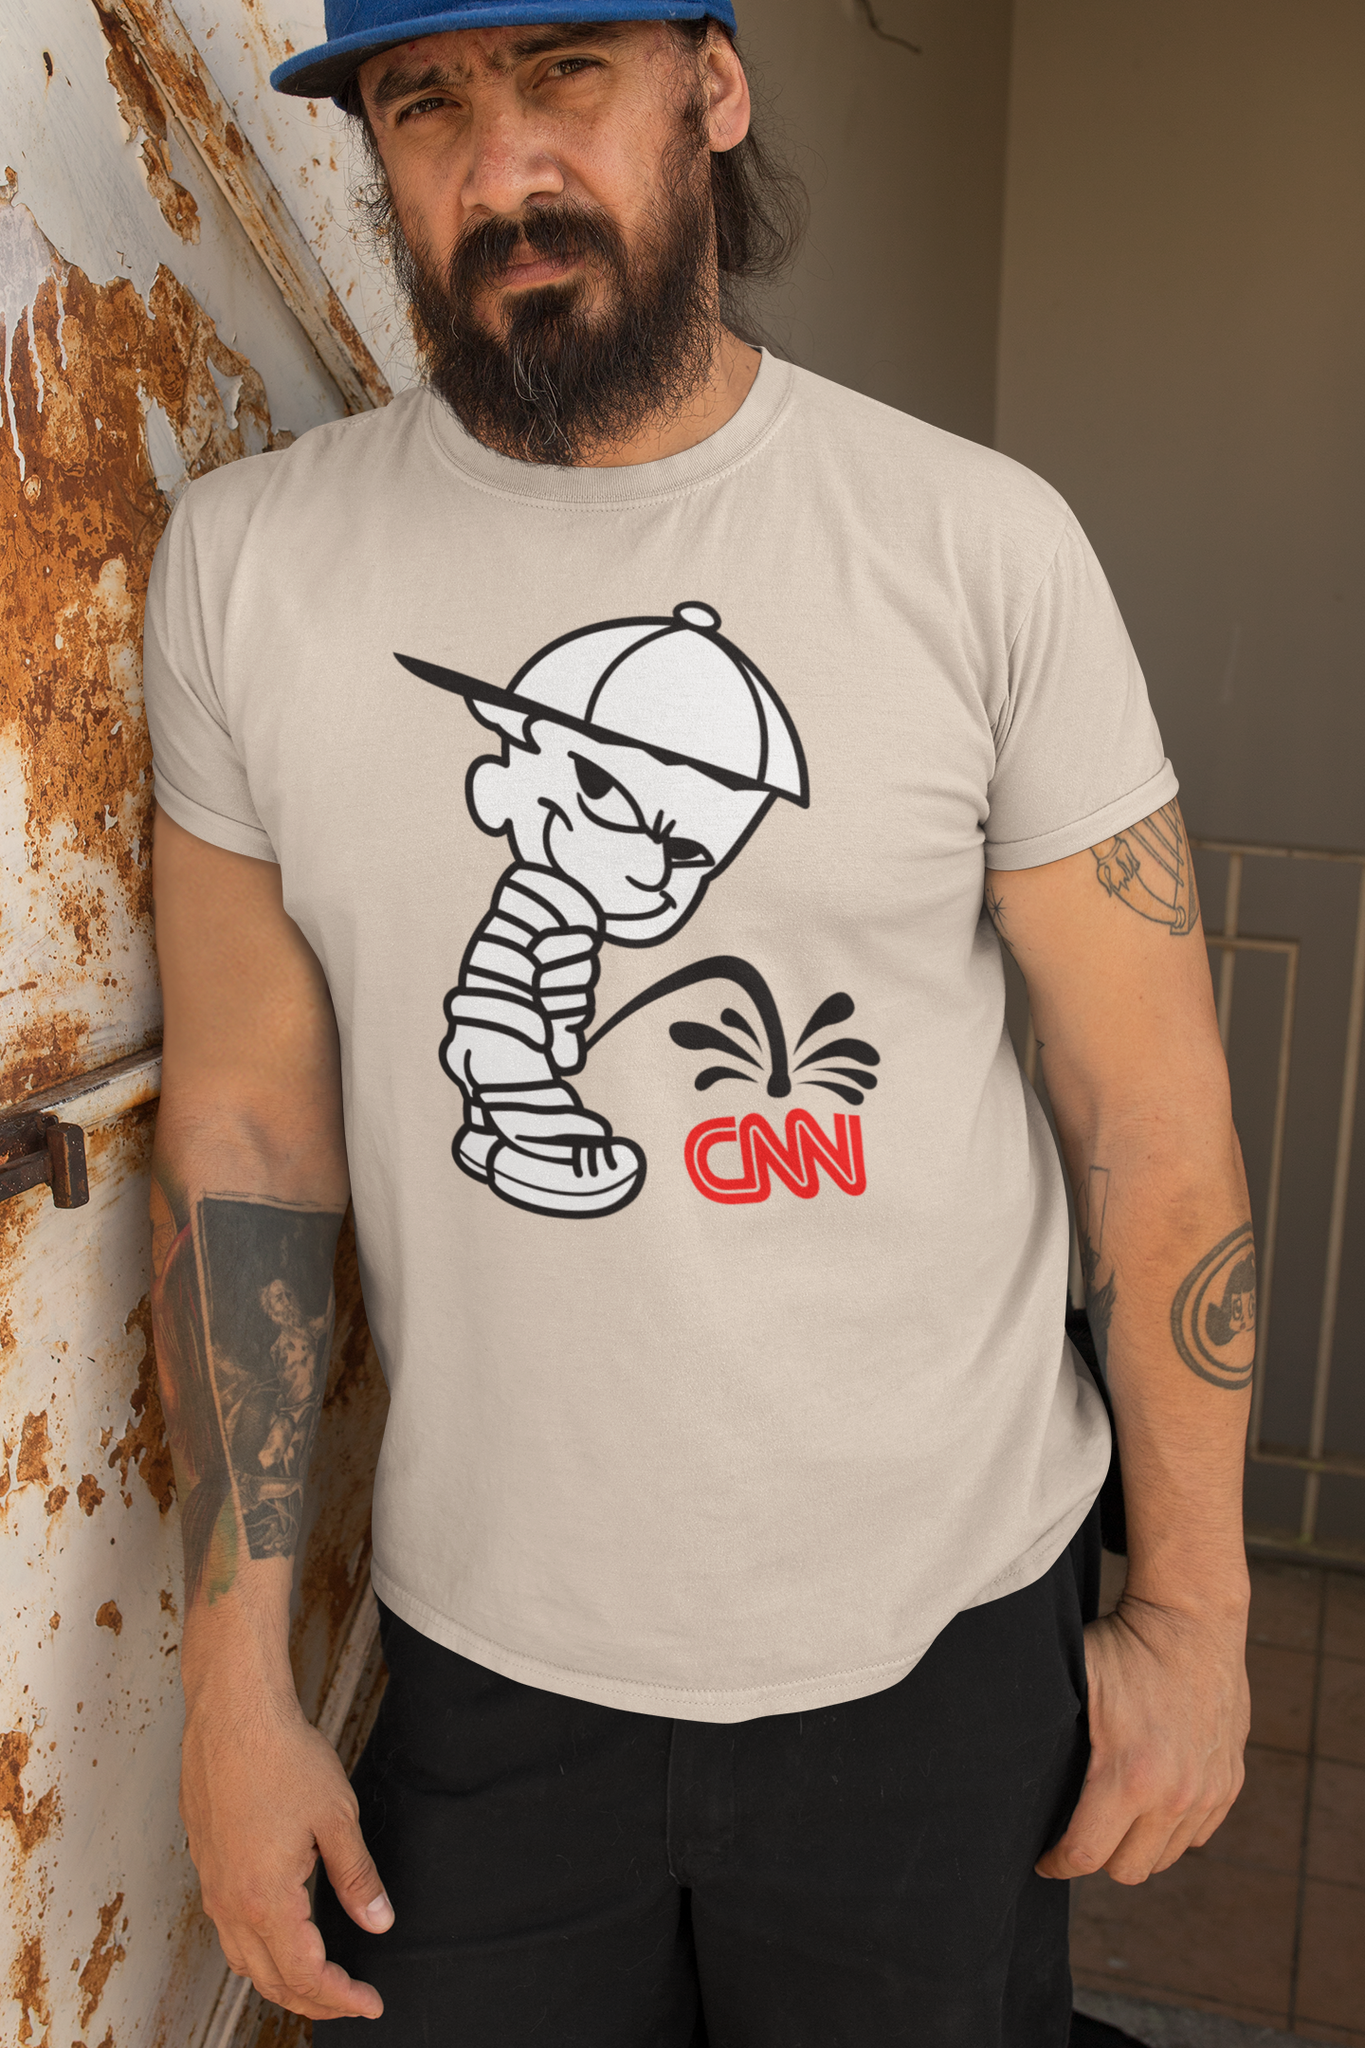 Taking A Piss-CNN T-Shirt Men